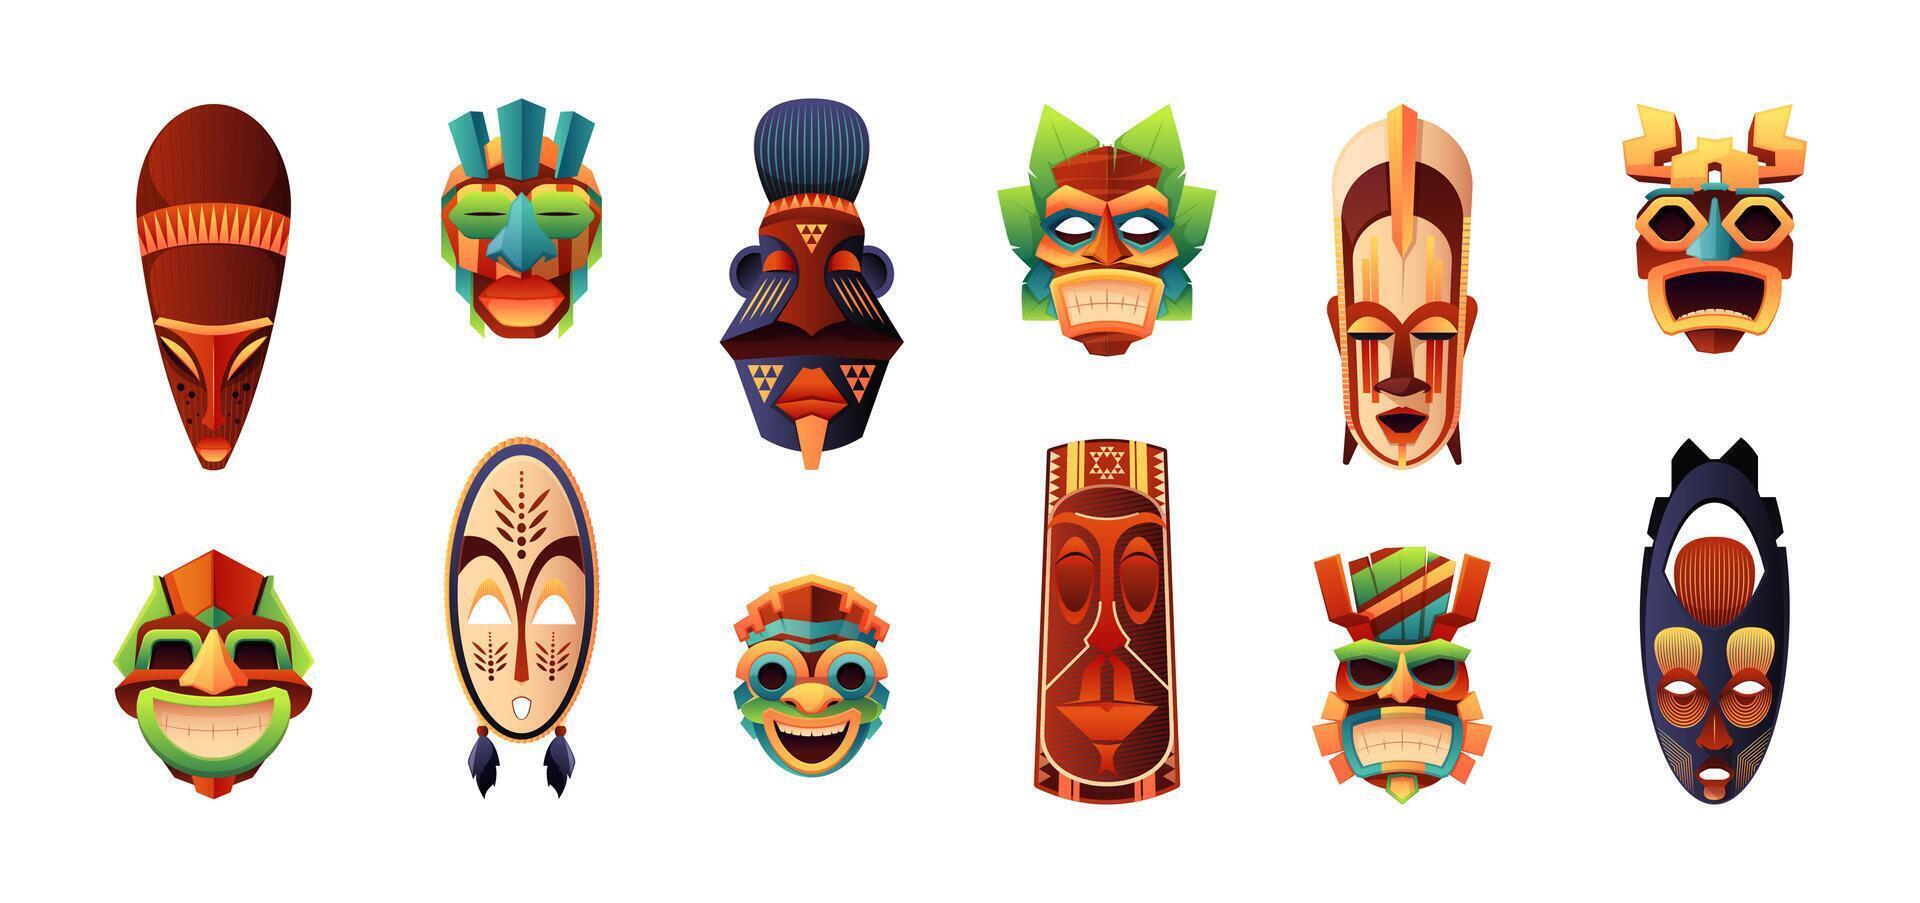 africano ritual máscaras tradicional ceremonial tribal humano cara conformado tótems, indígena gente decorativo zoomórfico bozal dibujos animados estilo. vector plano conjunto